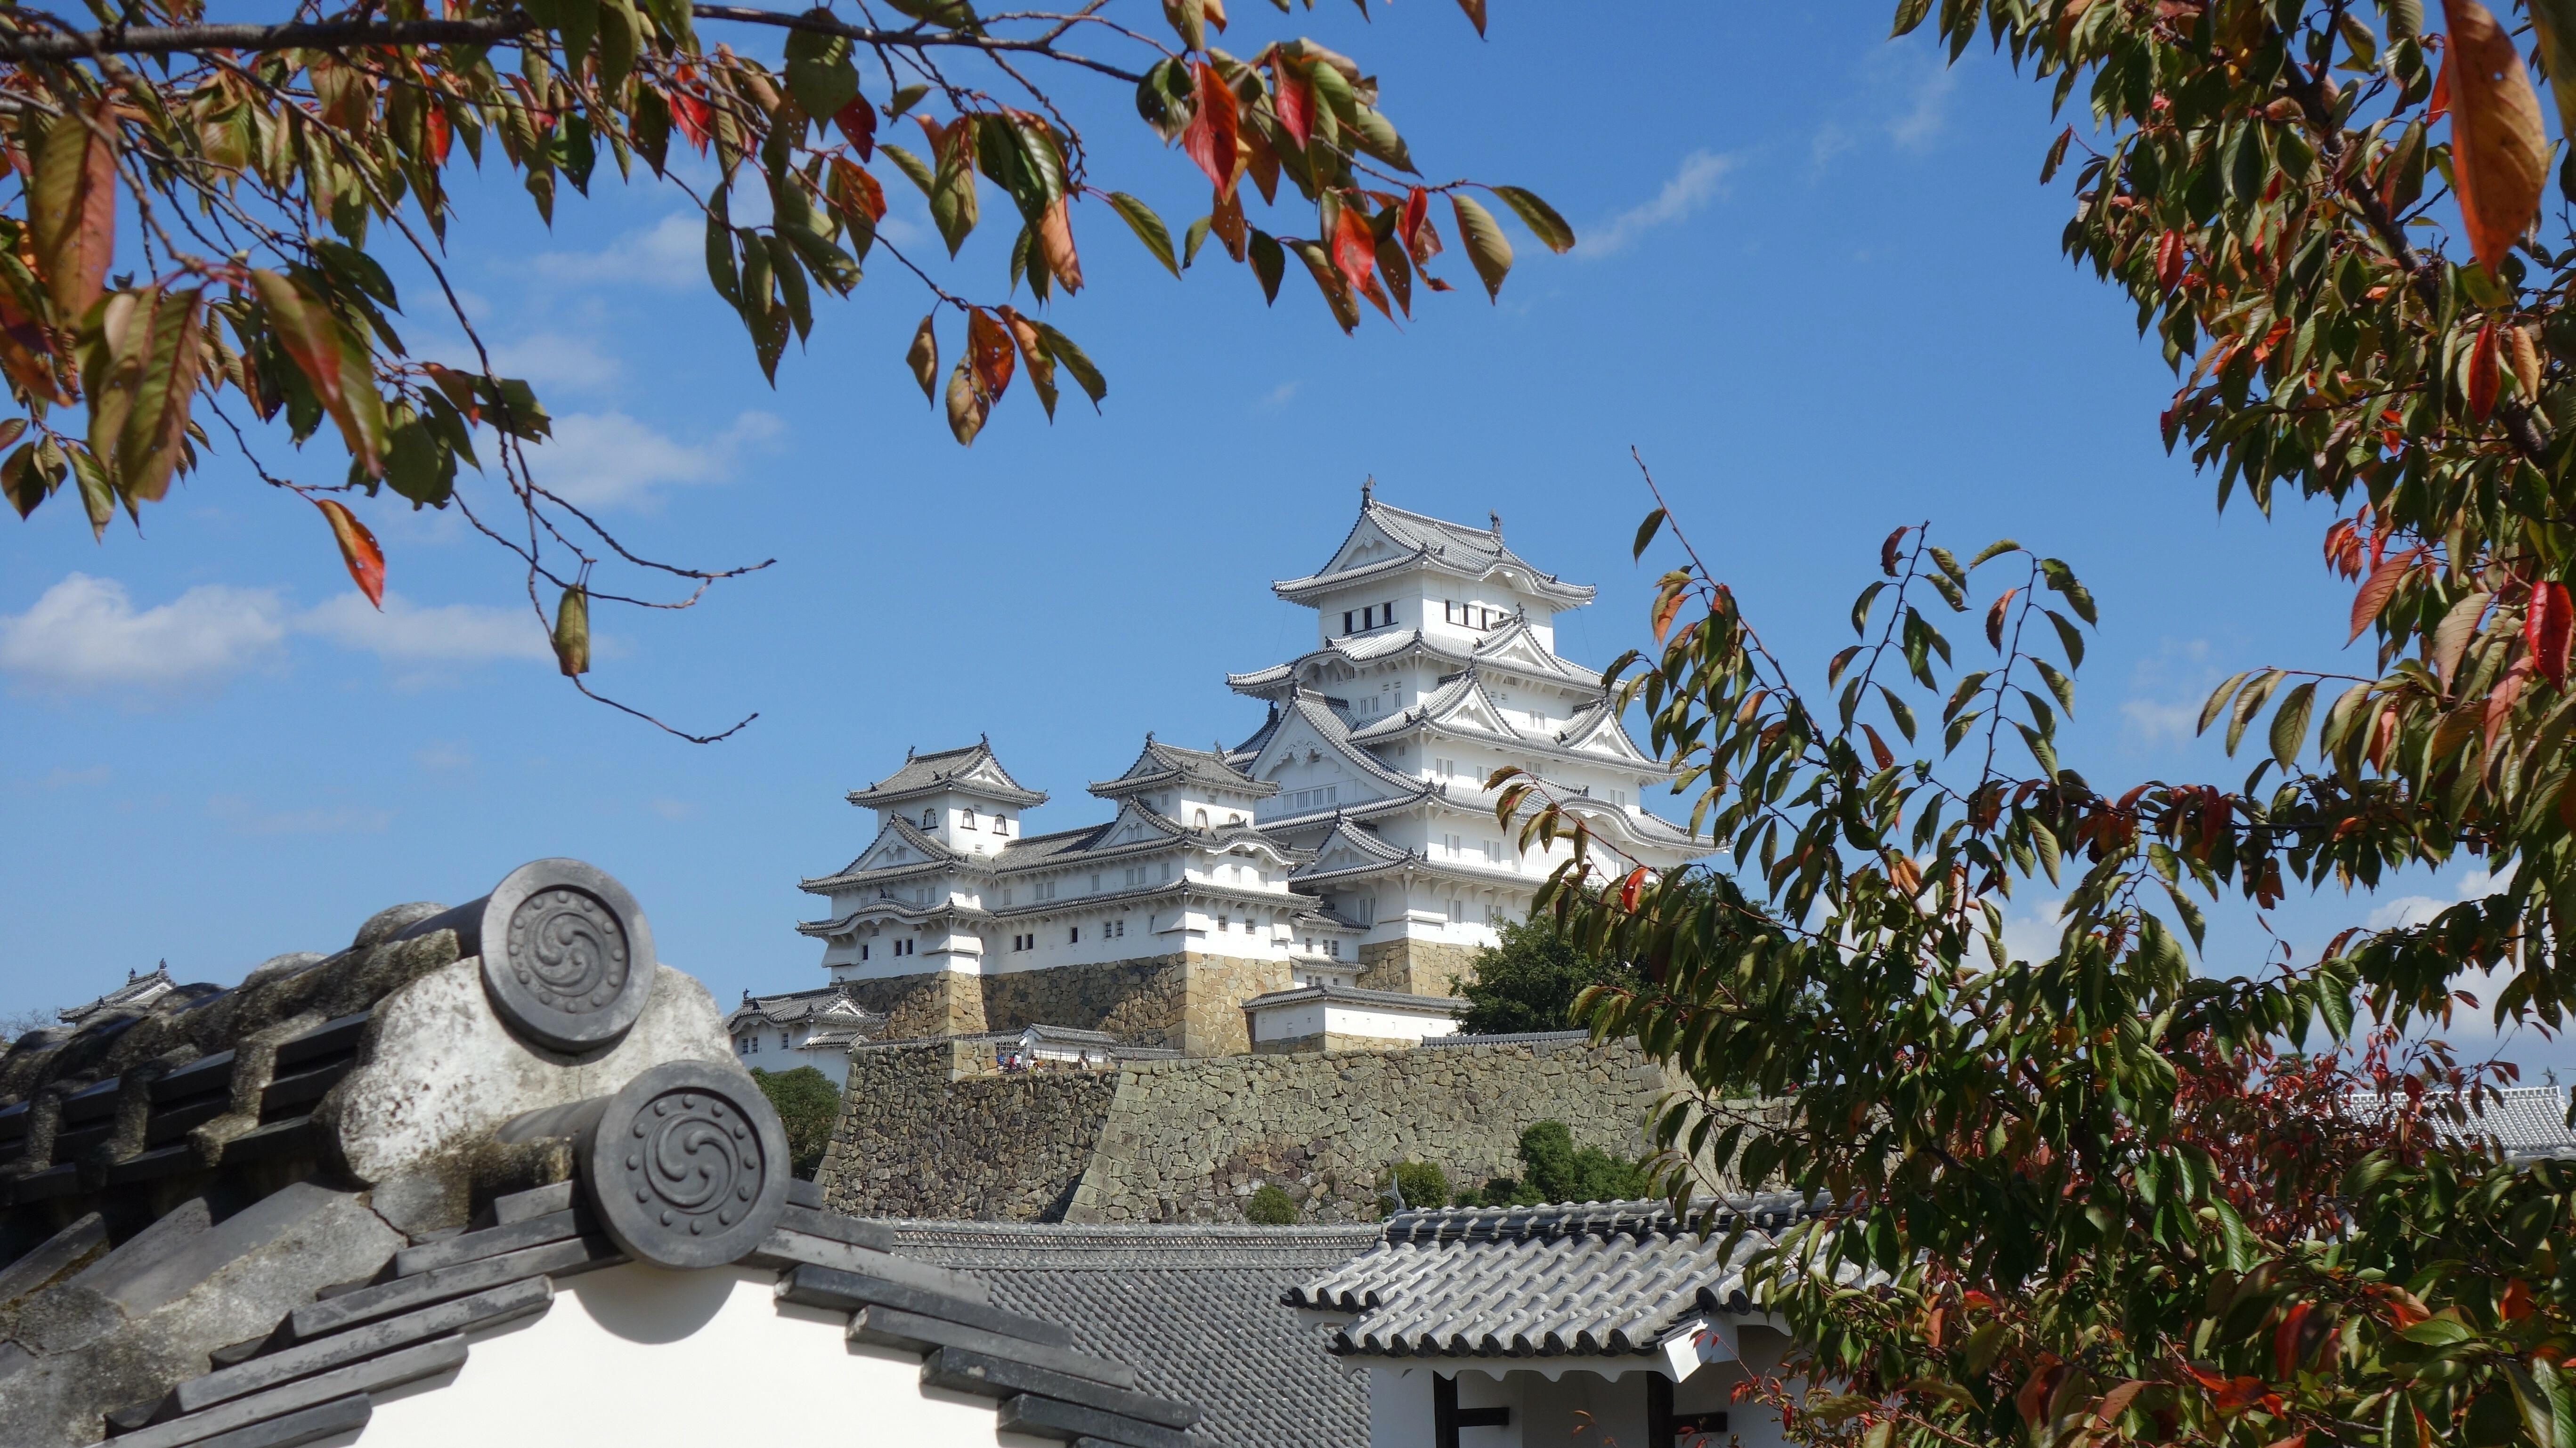 General 5469x3075 castle building Japan fall Himeji Castle landscape architecture